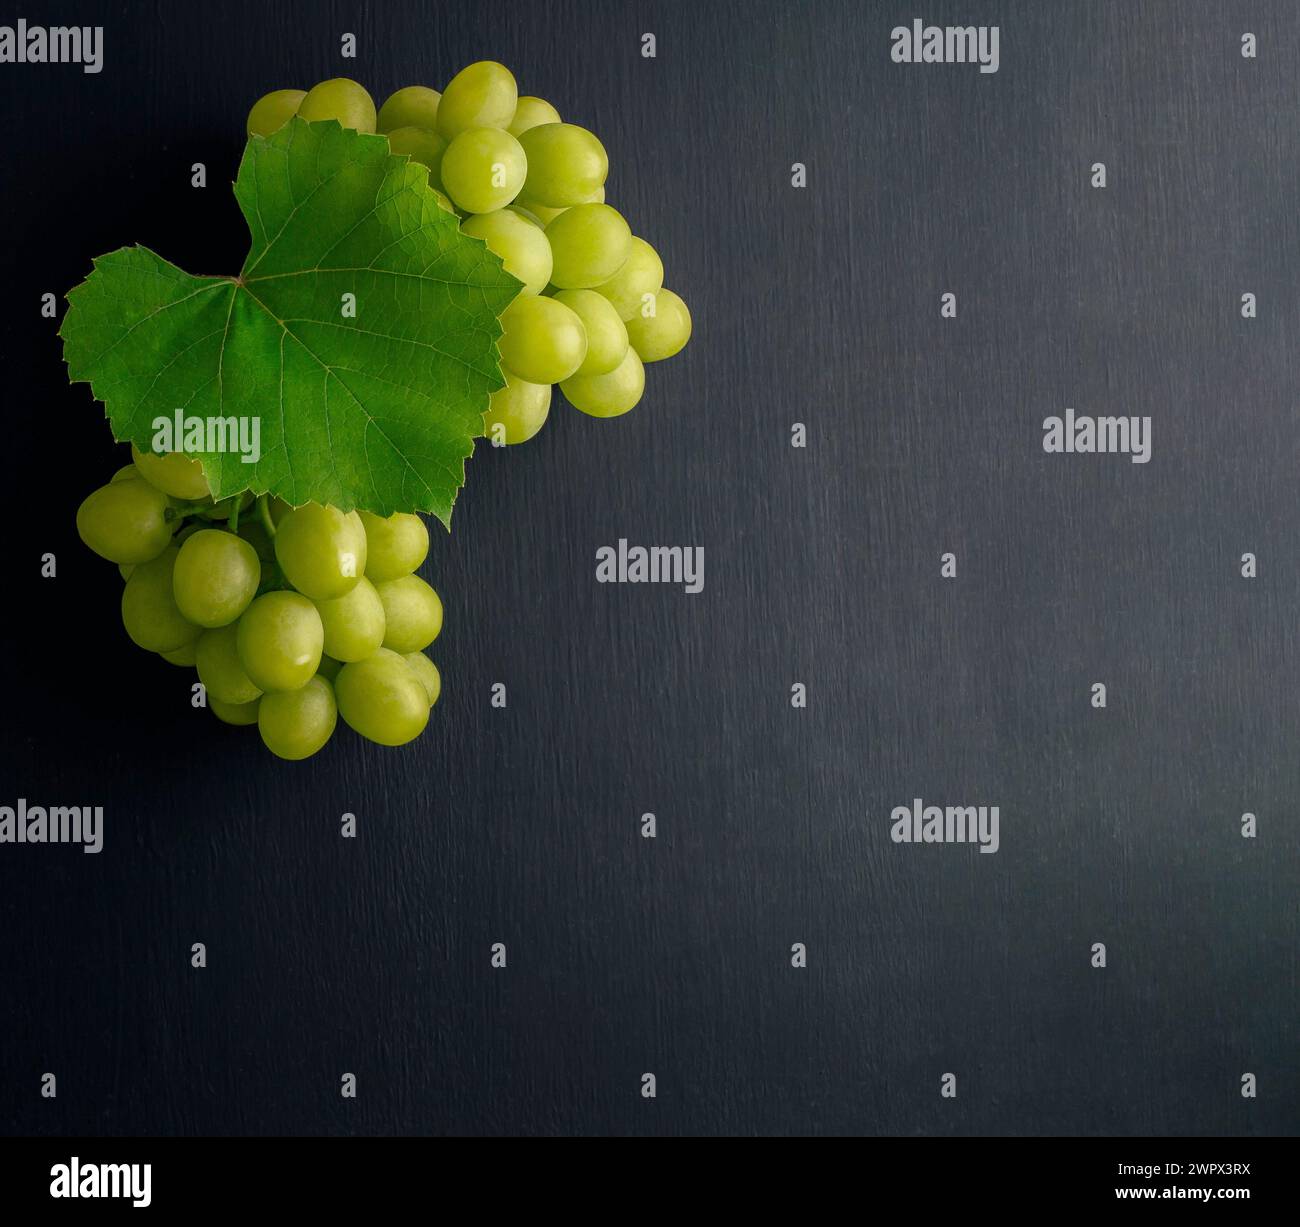 Un mucchio d'uva. Concetto di agricoltura e vinificazione. grappoli di uva con foglie su sfondo rustico scuro. La composizione del vino è piatta su un tavolo nero. Foto Stock